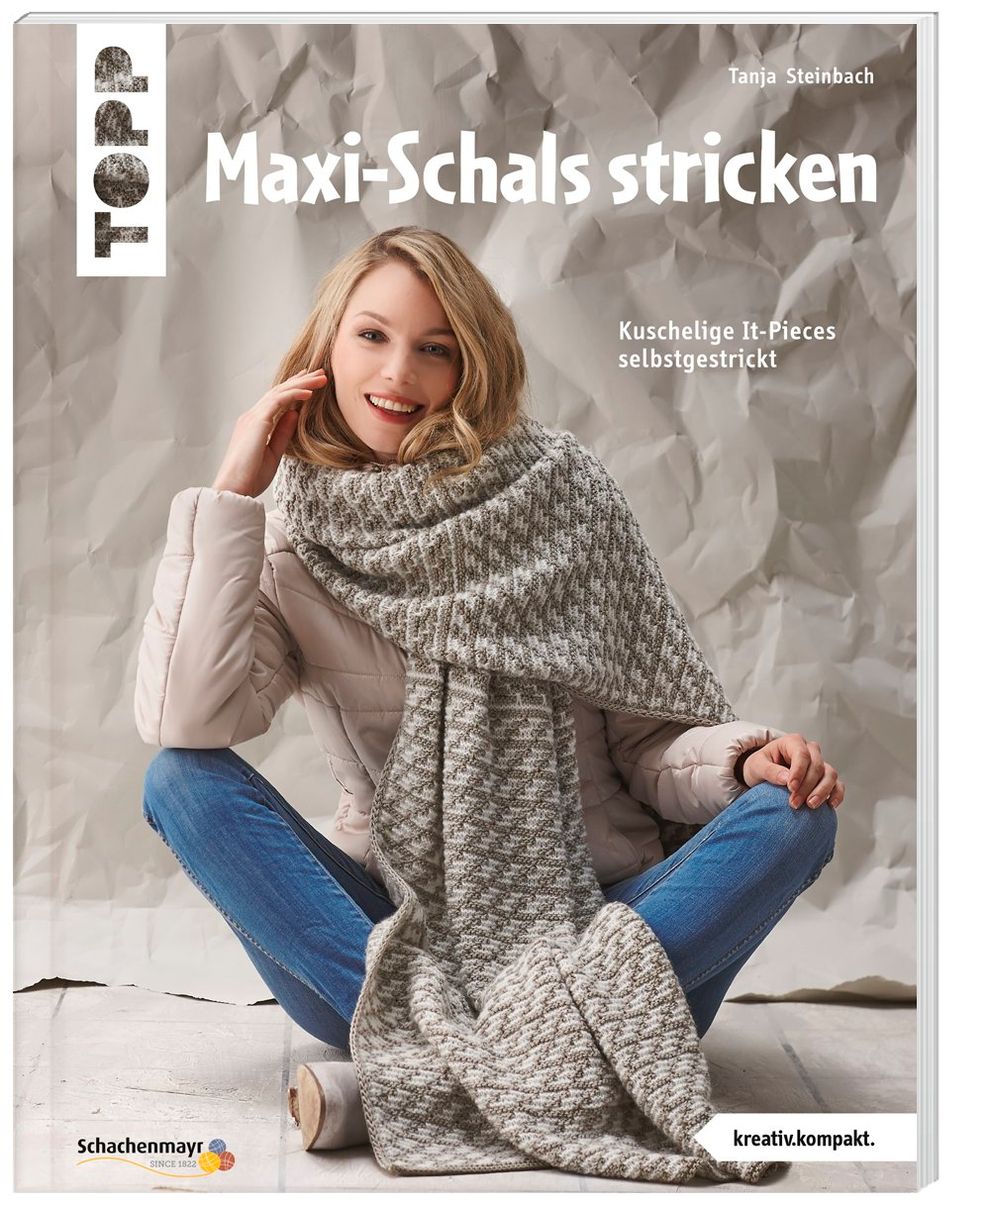 Maxi-Schals stricken Buch von Tanja Steinbach versandkostenfrei bestellen